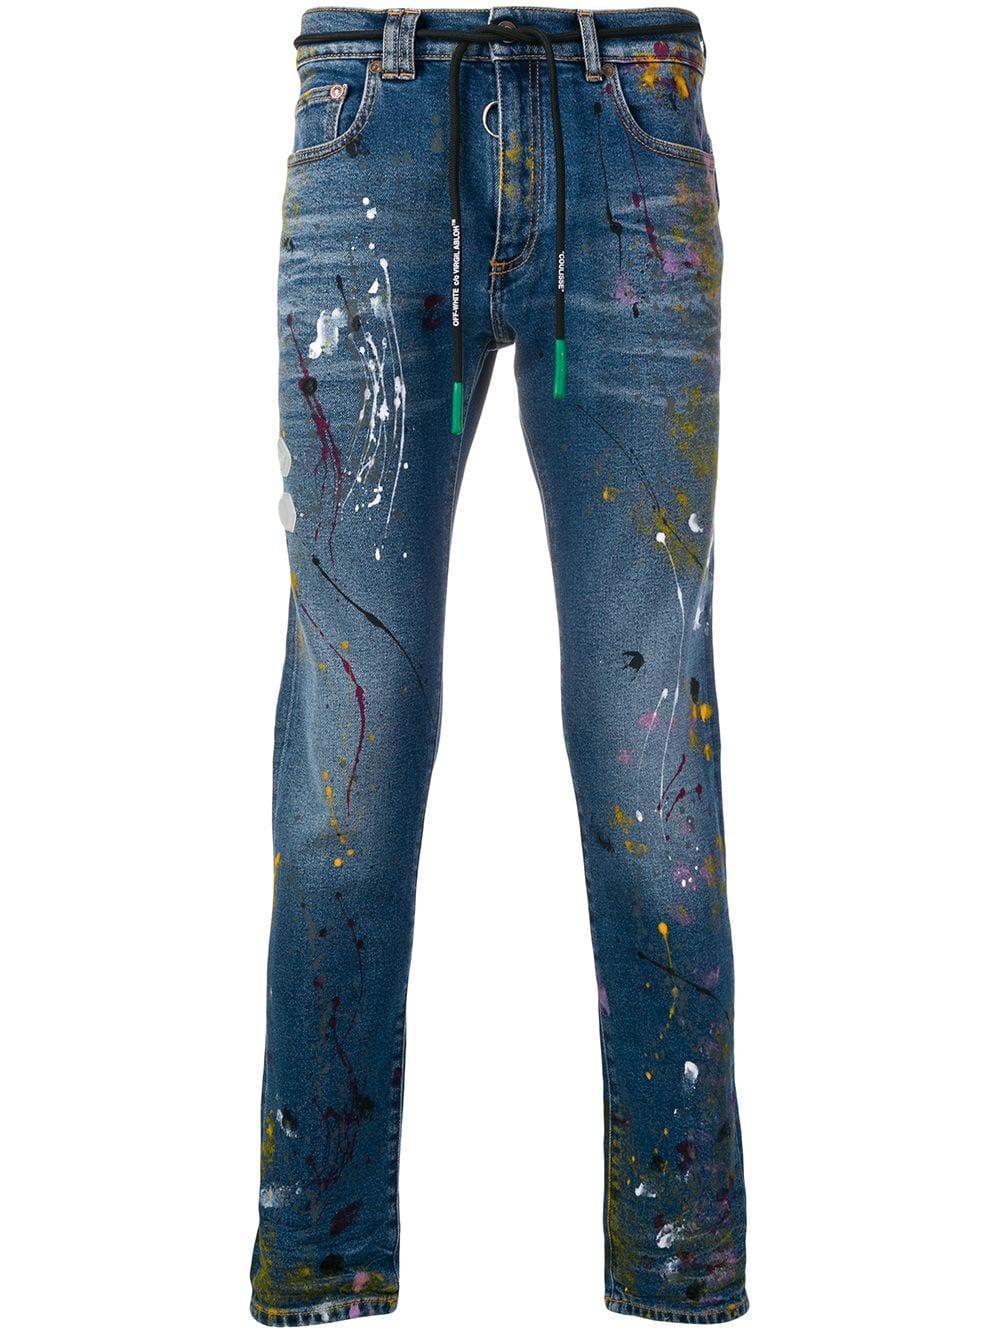 Off-White c/o Virgil Abloh Paint Splattered Skinny Jeans in Blue 